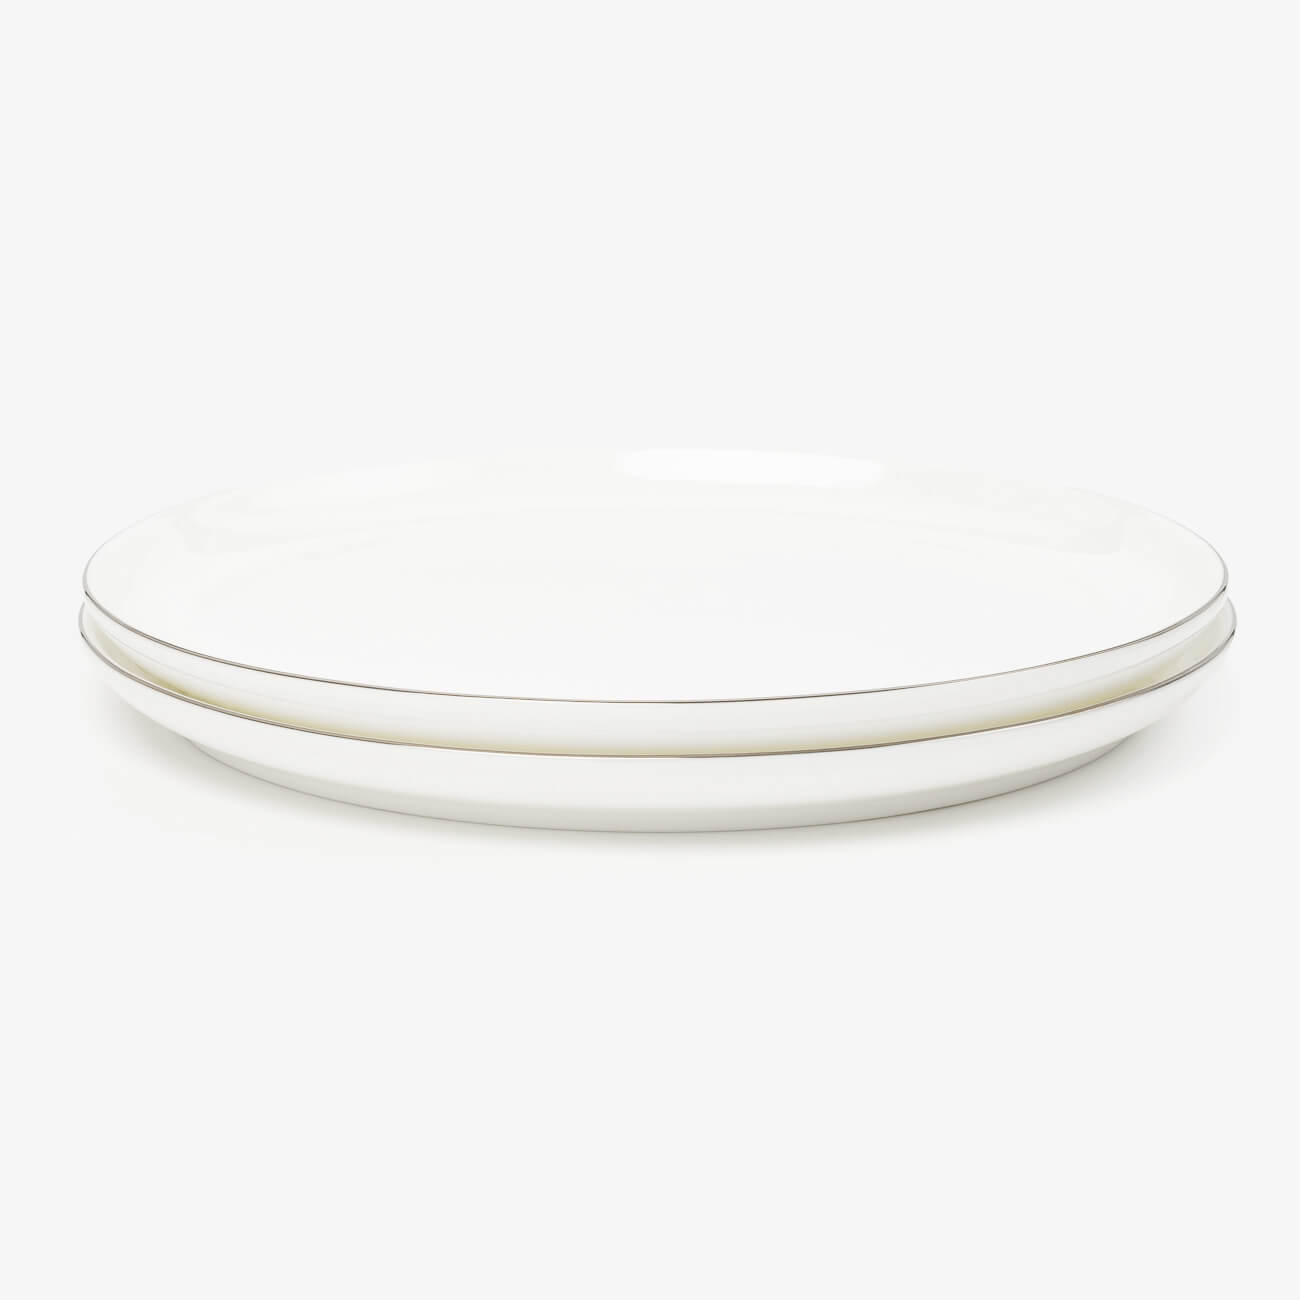 Тарелка закусочная, 24 см, 2 шт, фарфор F, Antarctica тарелка закусочная детская 21 см бамбук розовая единорог и радуга unicorn